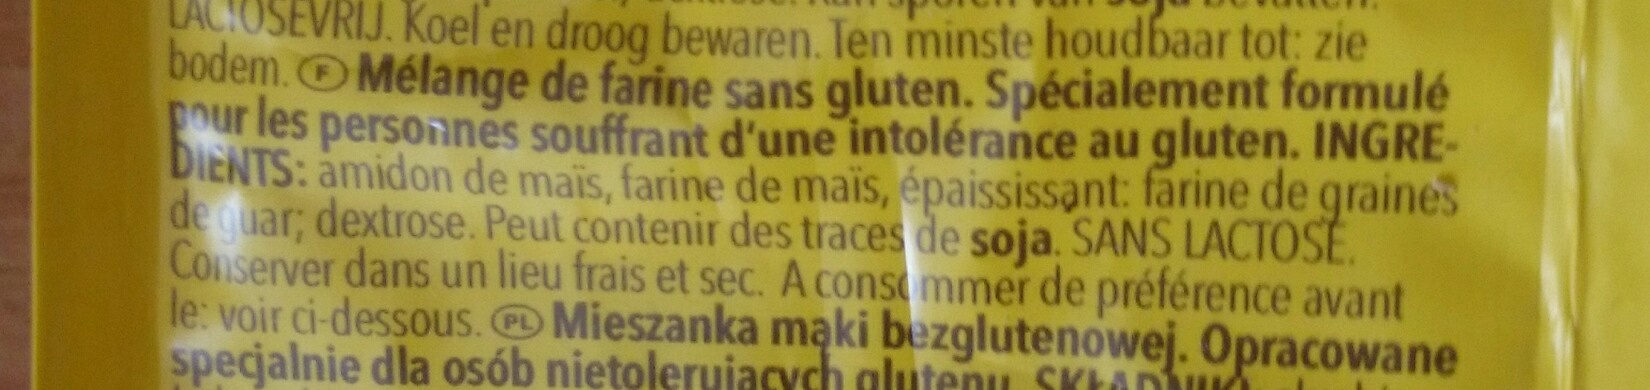 farine sans gluten - Ingrédients - fr